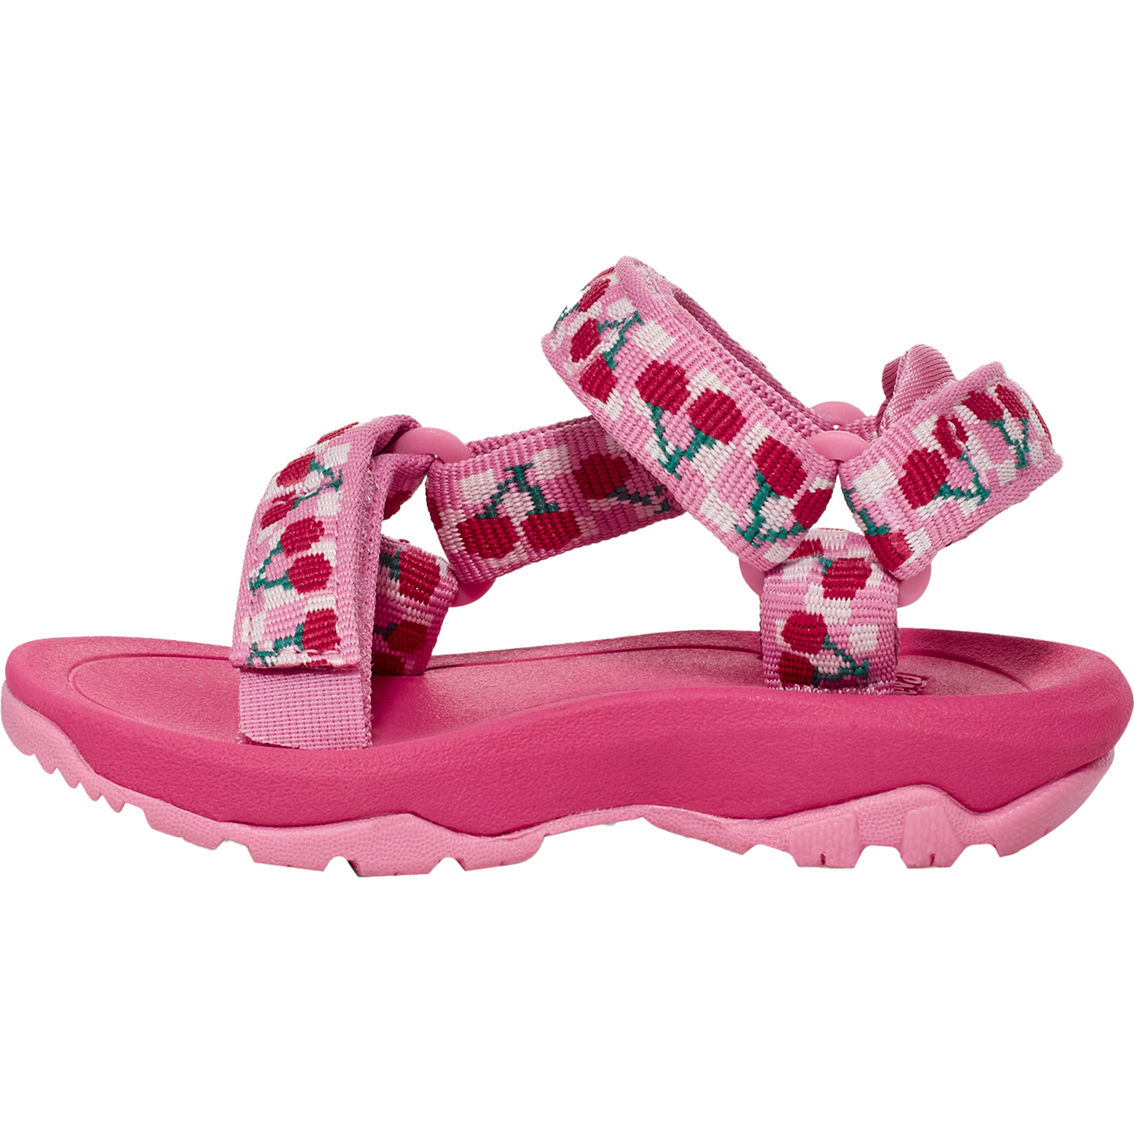 Teva Toddler Girls Hurricane XLT Sandals - Image 3 of 6